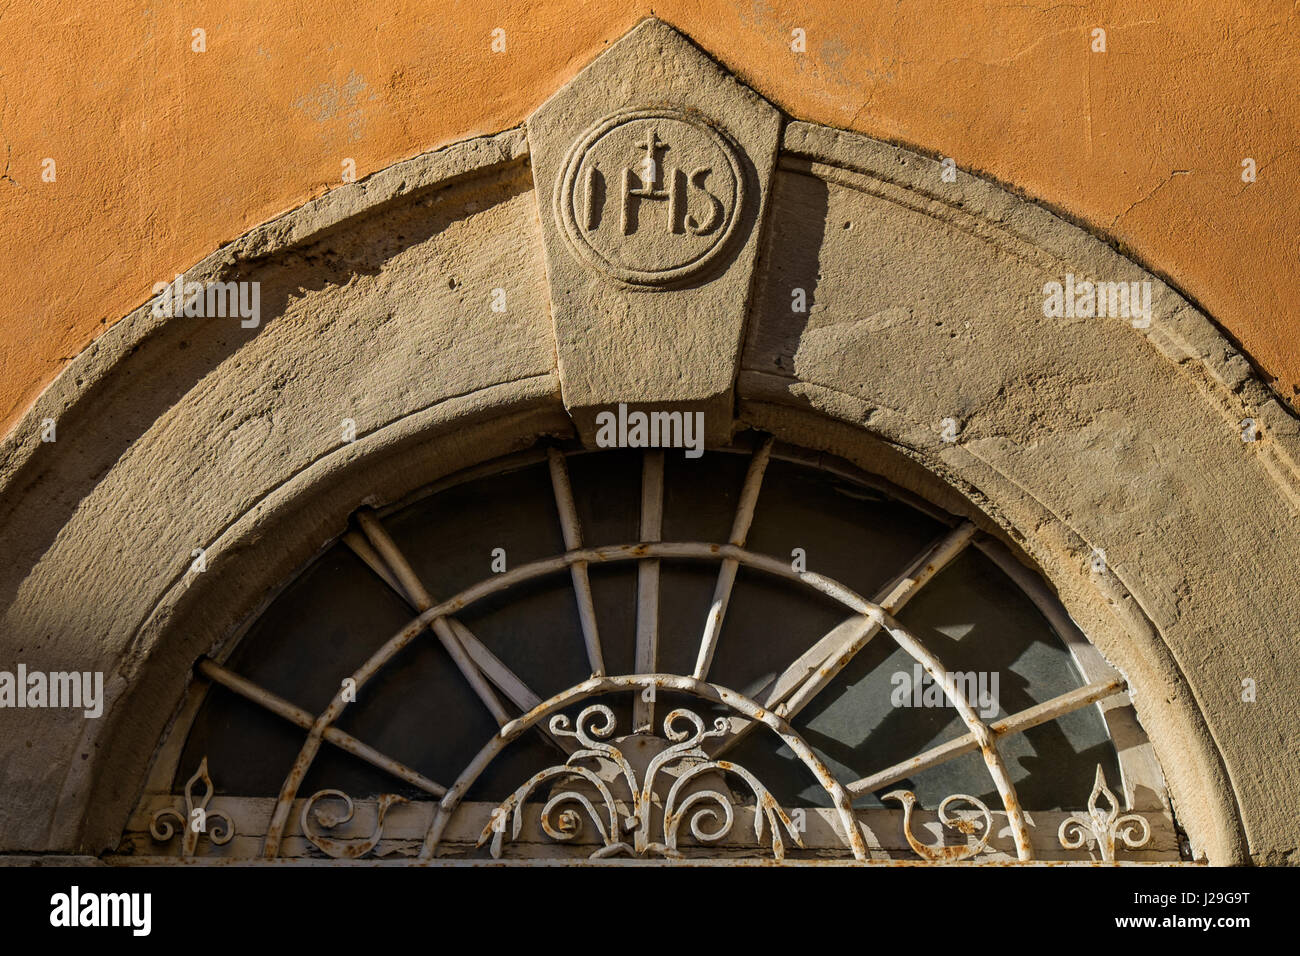 GUARDISTALLO Pisa, Italia - Particolari della porta con la sigla IHS  trascrizione latina dell'abbreviazione del nome greco di Gesù (Gesù Hominu  Sal Foto stock - Alamy